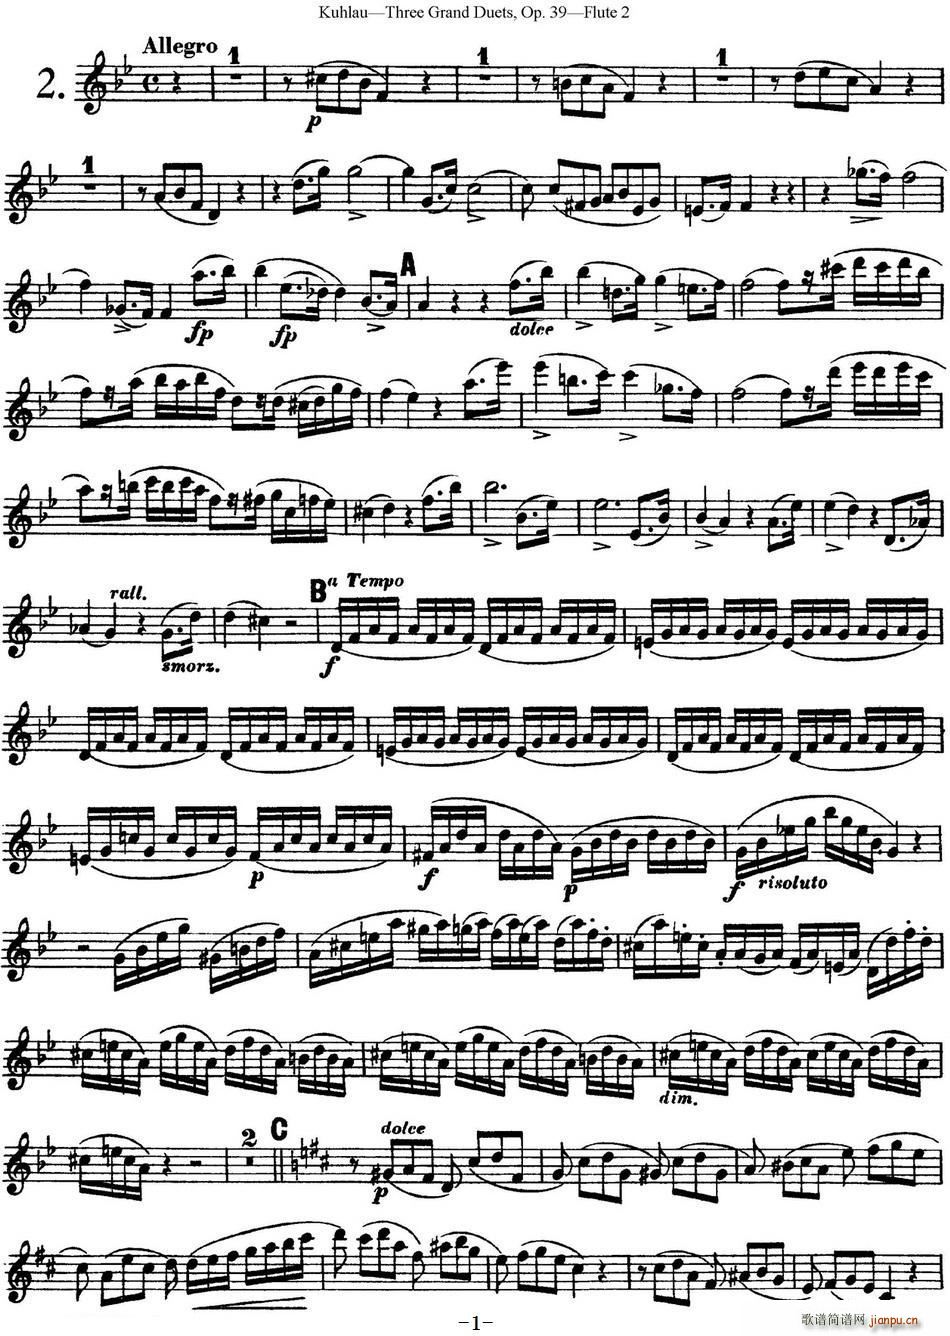 库劳长笛二重奏大练习曲Op 39 Flute 2 No 2(笛箫谱)1